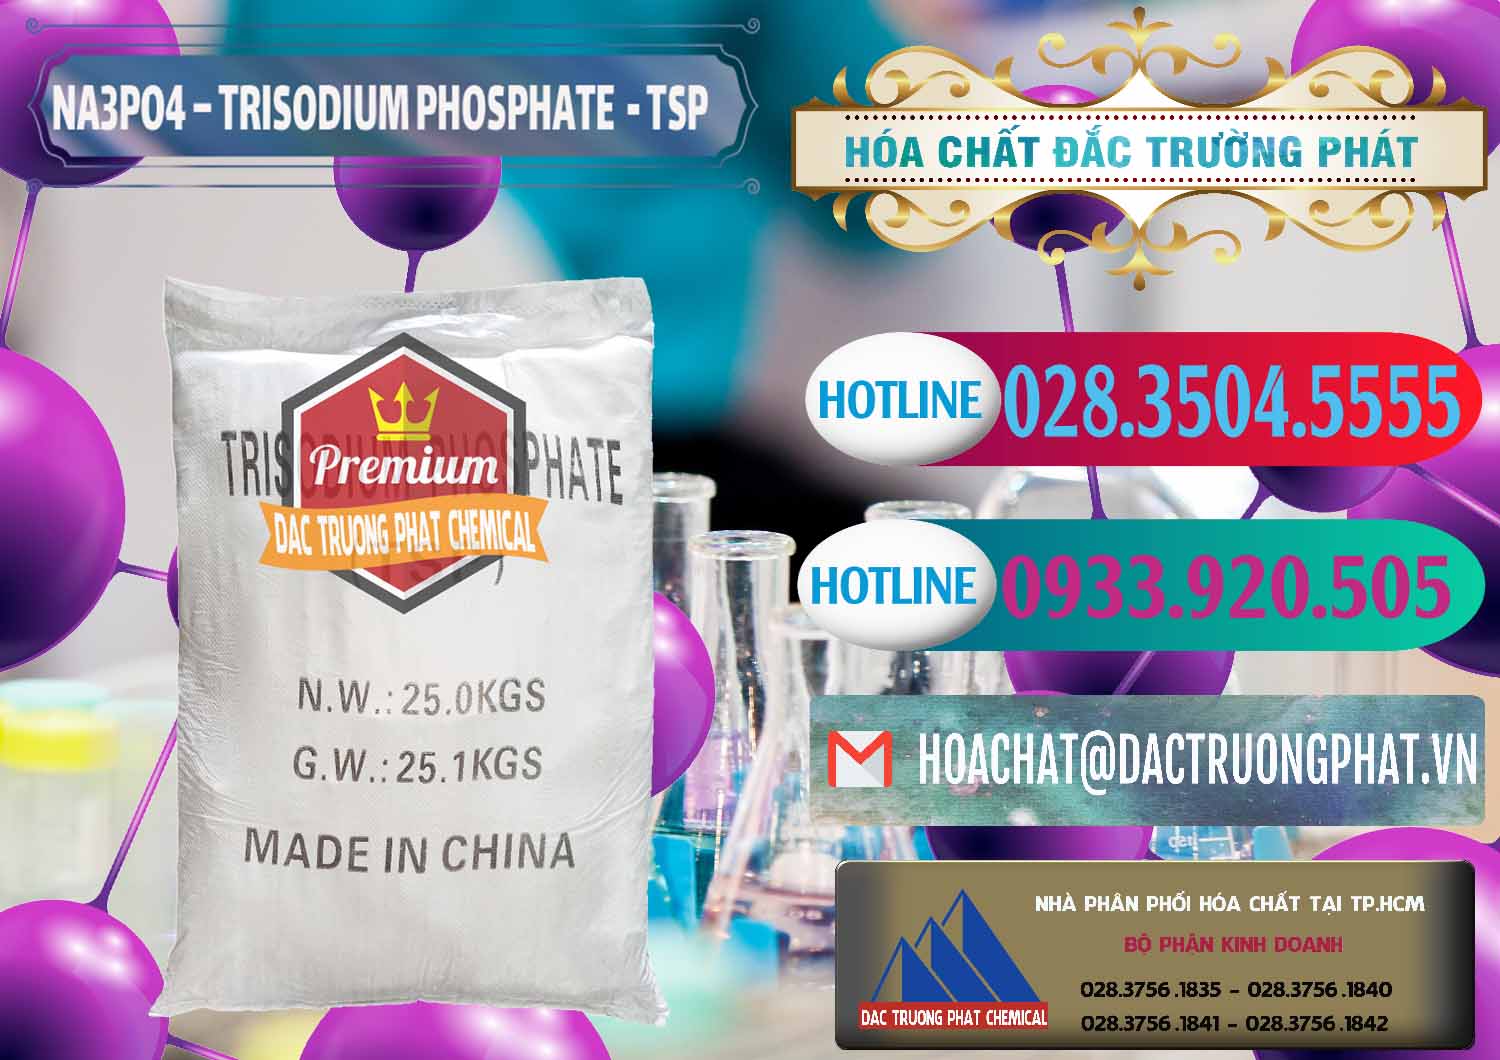 Nơi chuyên bán & cung cấp Na3PO4 – Trisodium Phosphate Trung Quốc China TSP - 0103 - Công ty cung cấp và bán hóa chất tại TP.HCM - truongphat.vn